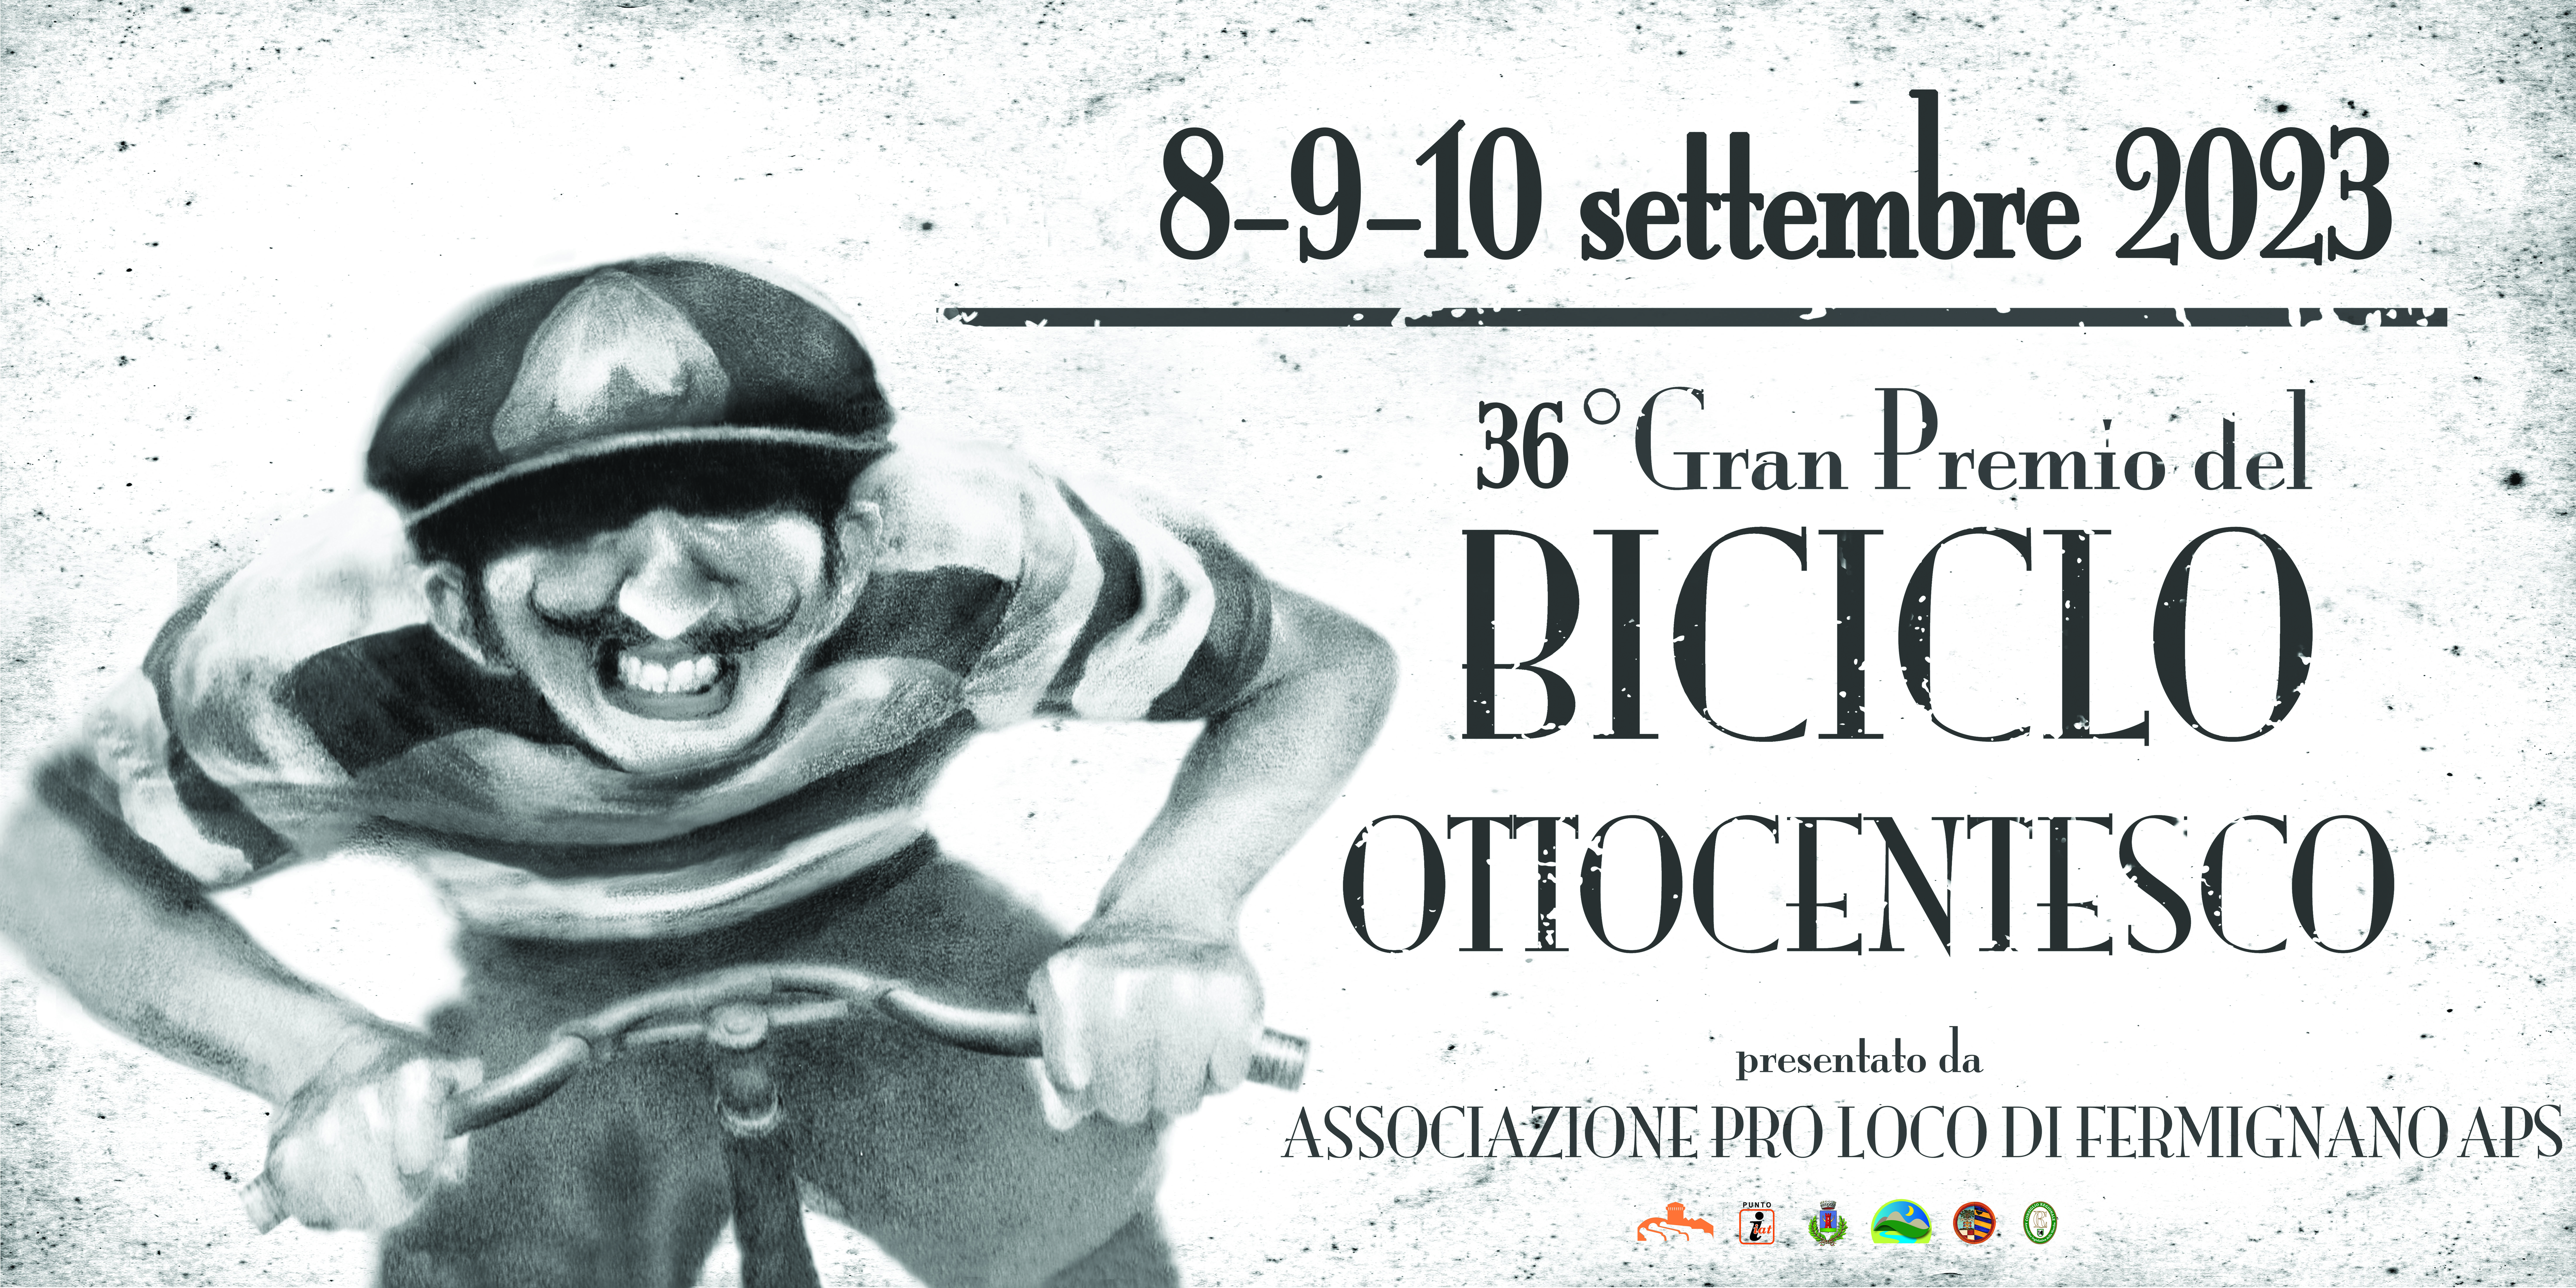 36° Gran Premio del Biciclo Ottocentesco